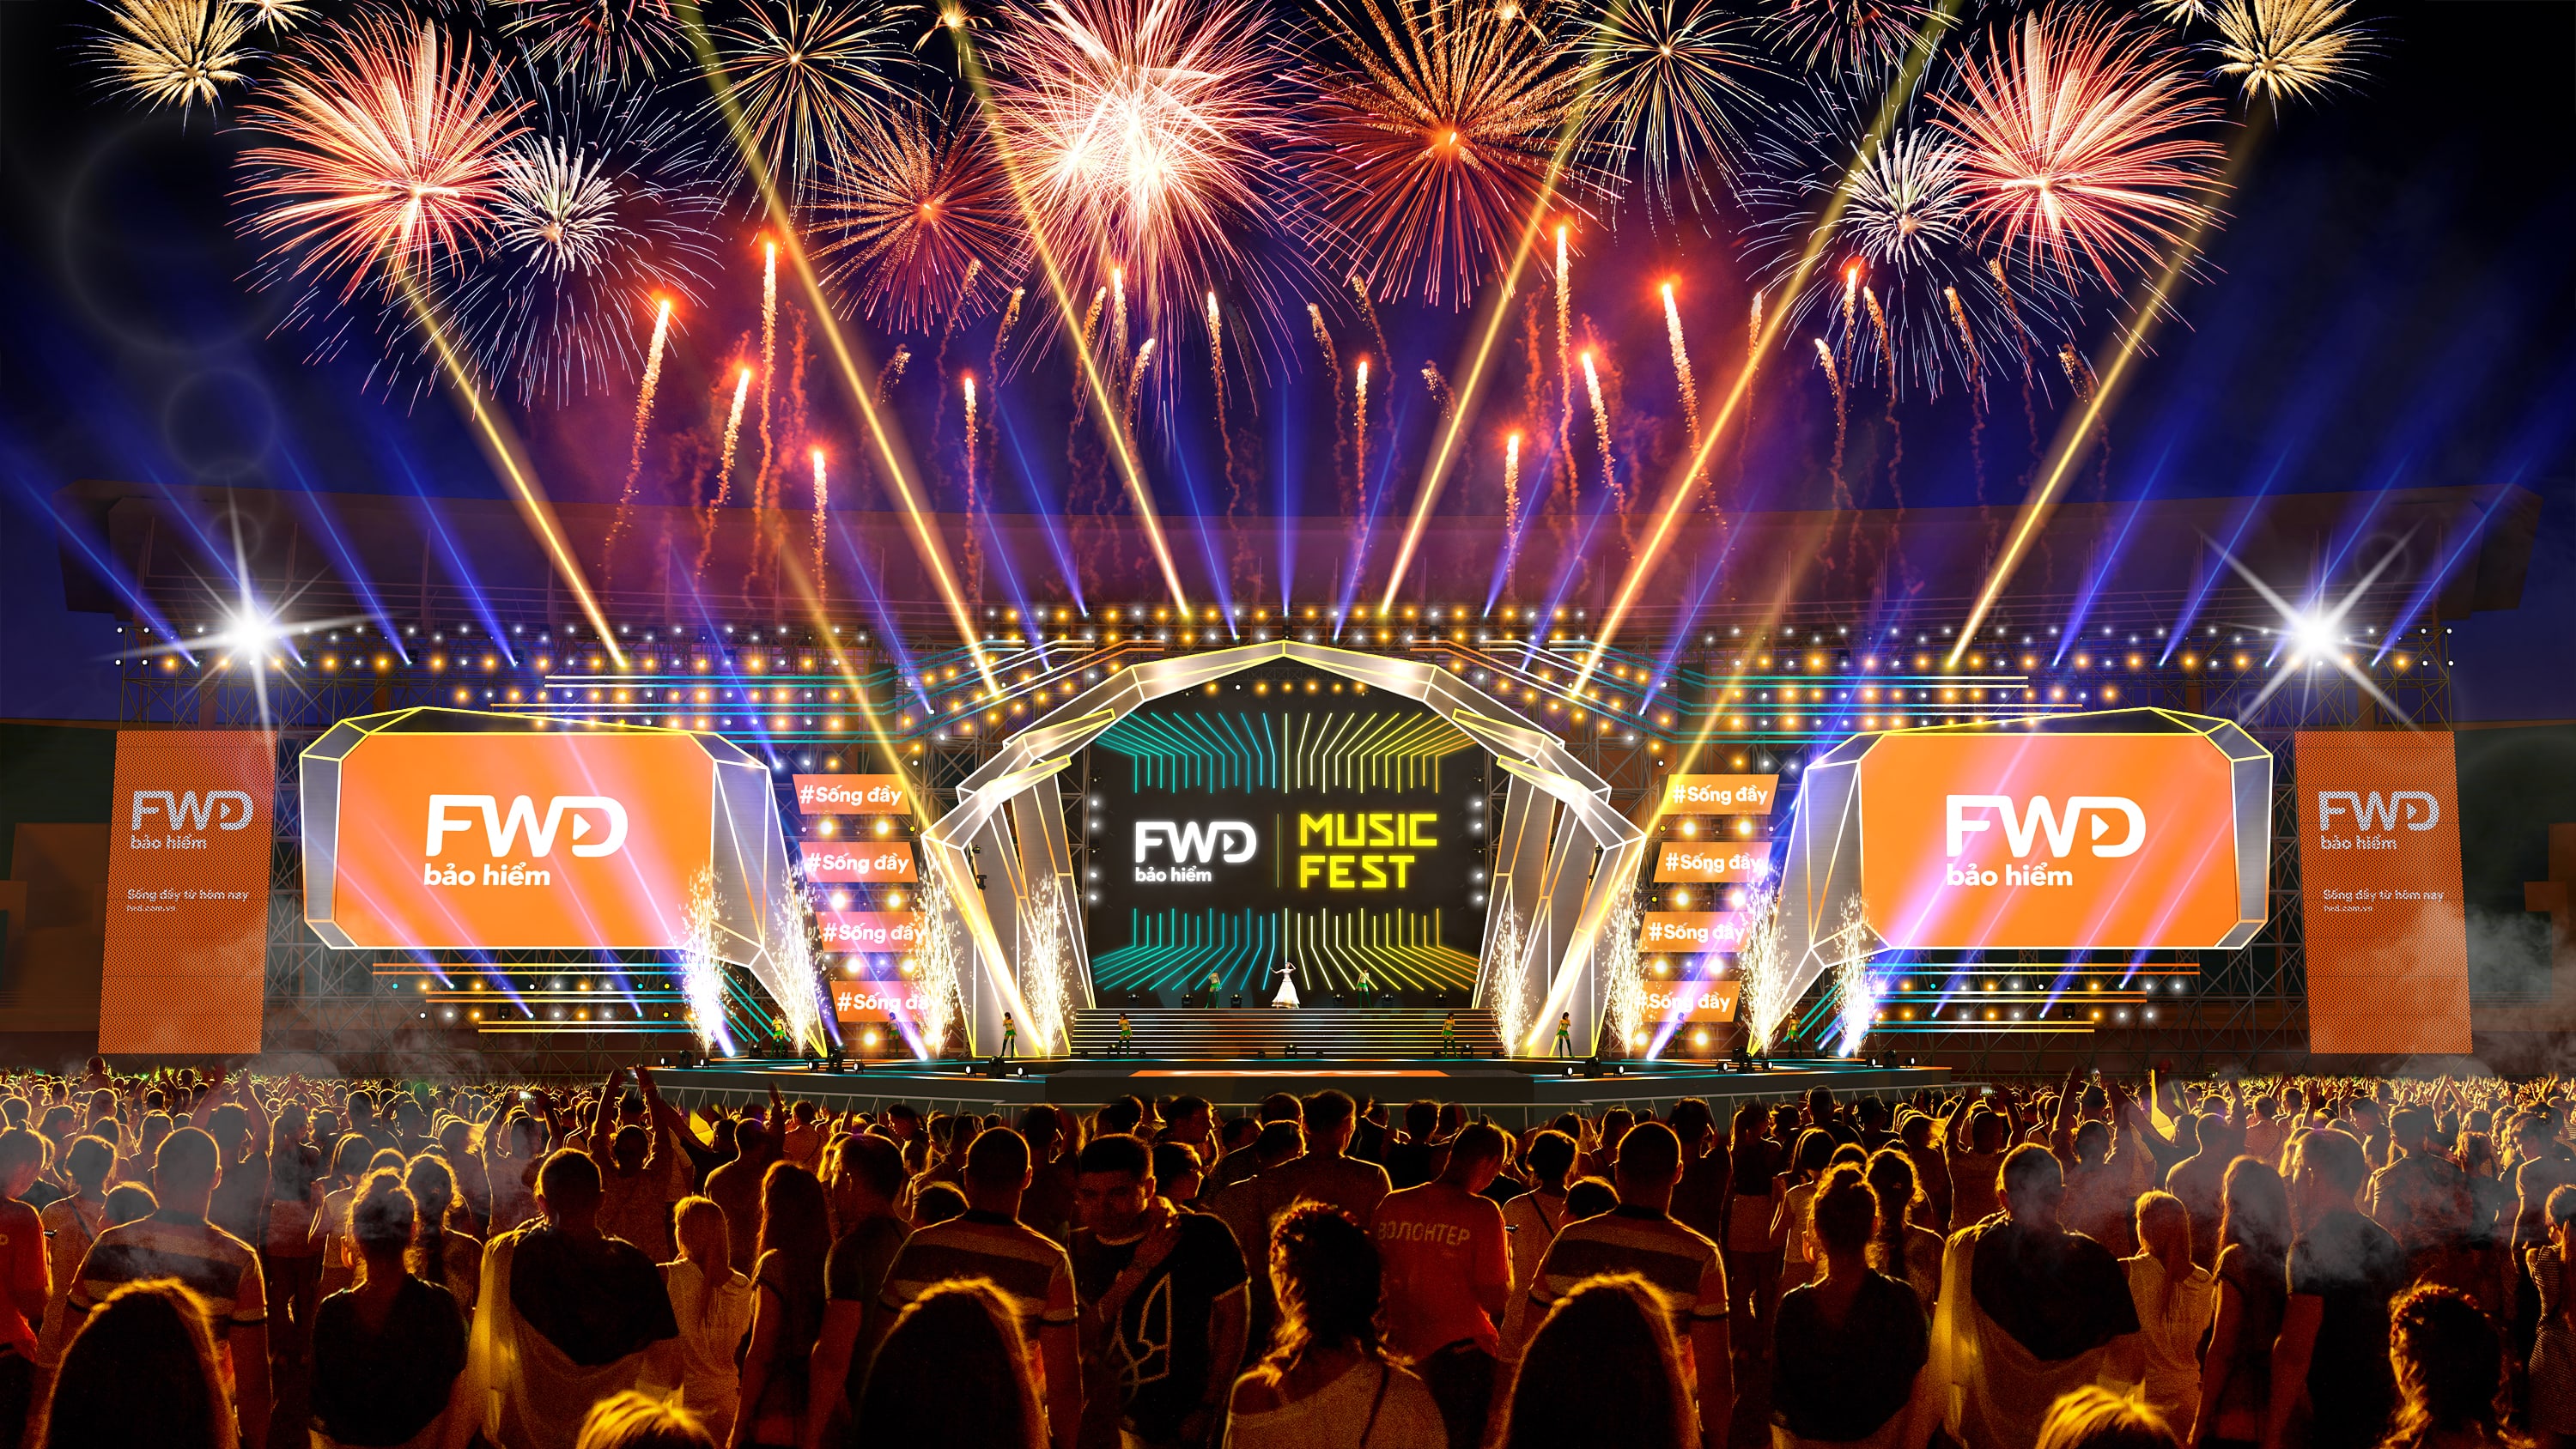 FWD Music Fest trở lại bùng nổ với quy mô hoành tráng tại thủ đô Hà Nội